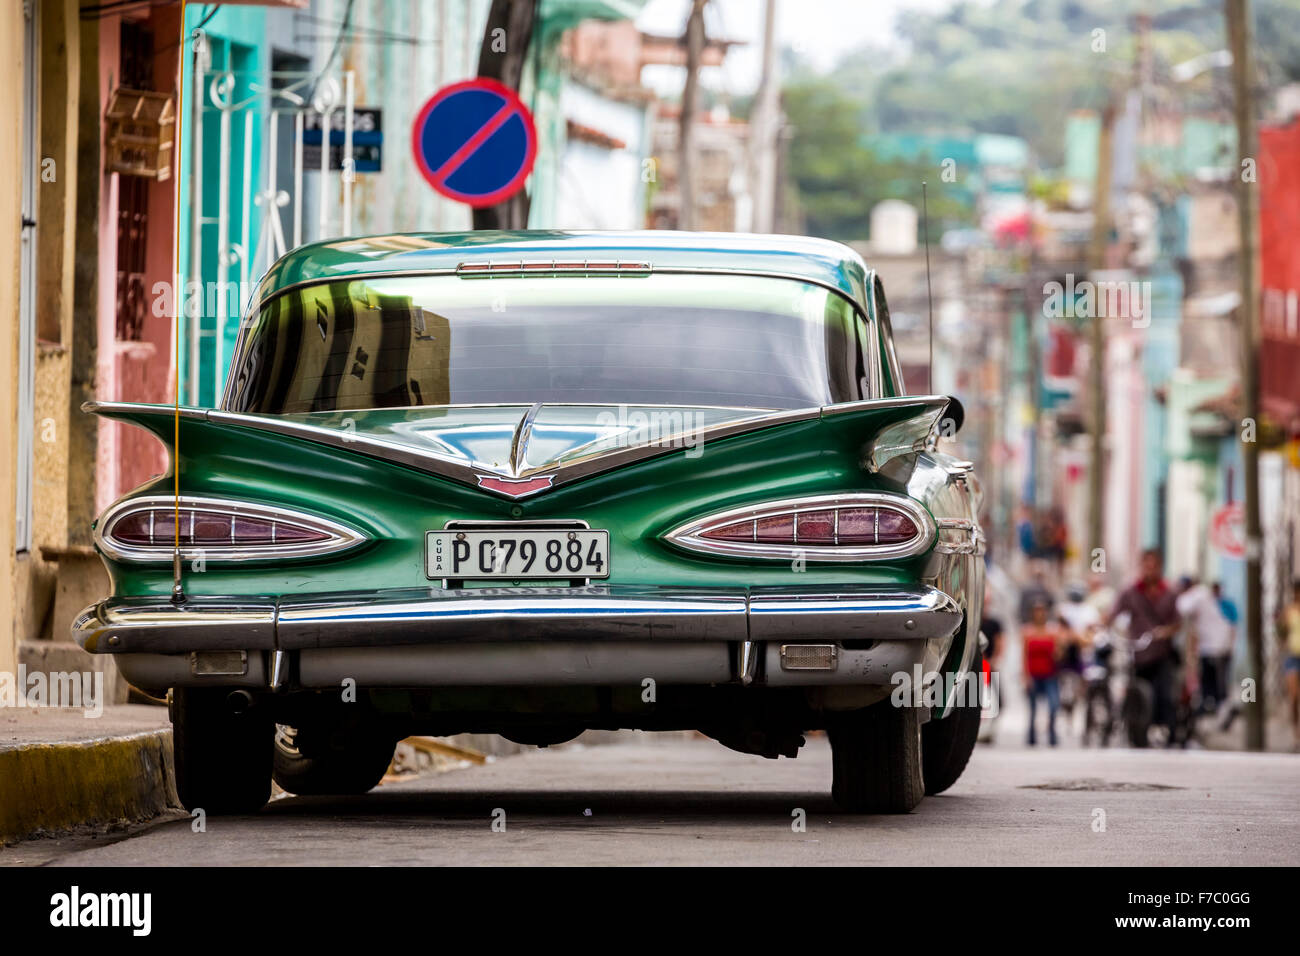 Vintage, historical street cruiser, green Impala, Streetlife in the center of Santa Clara at Parque de Santa Clara, Cuba, Stock Photo